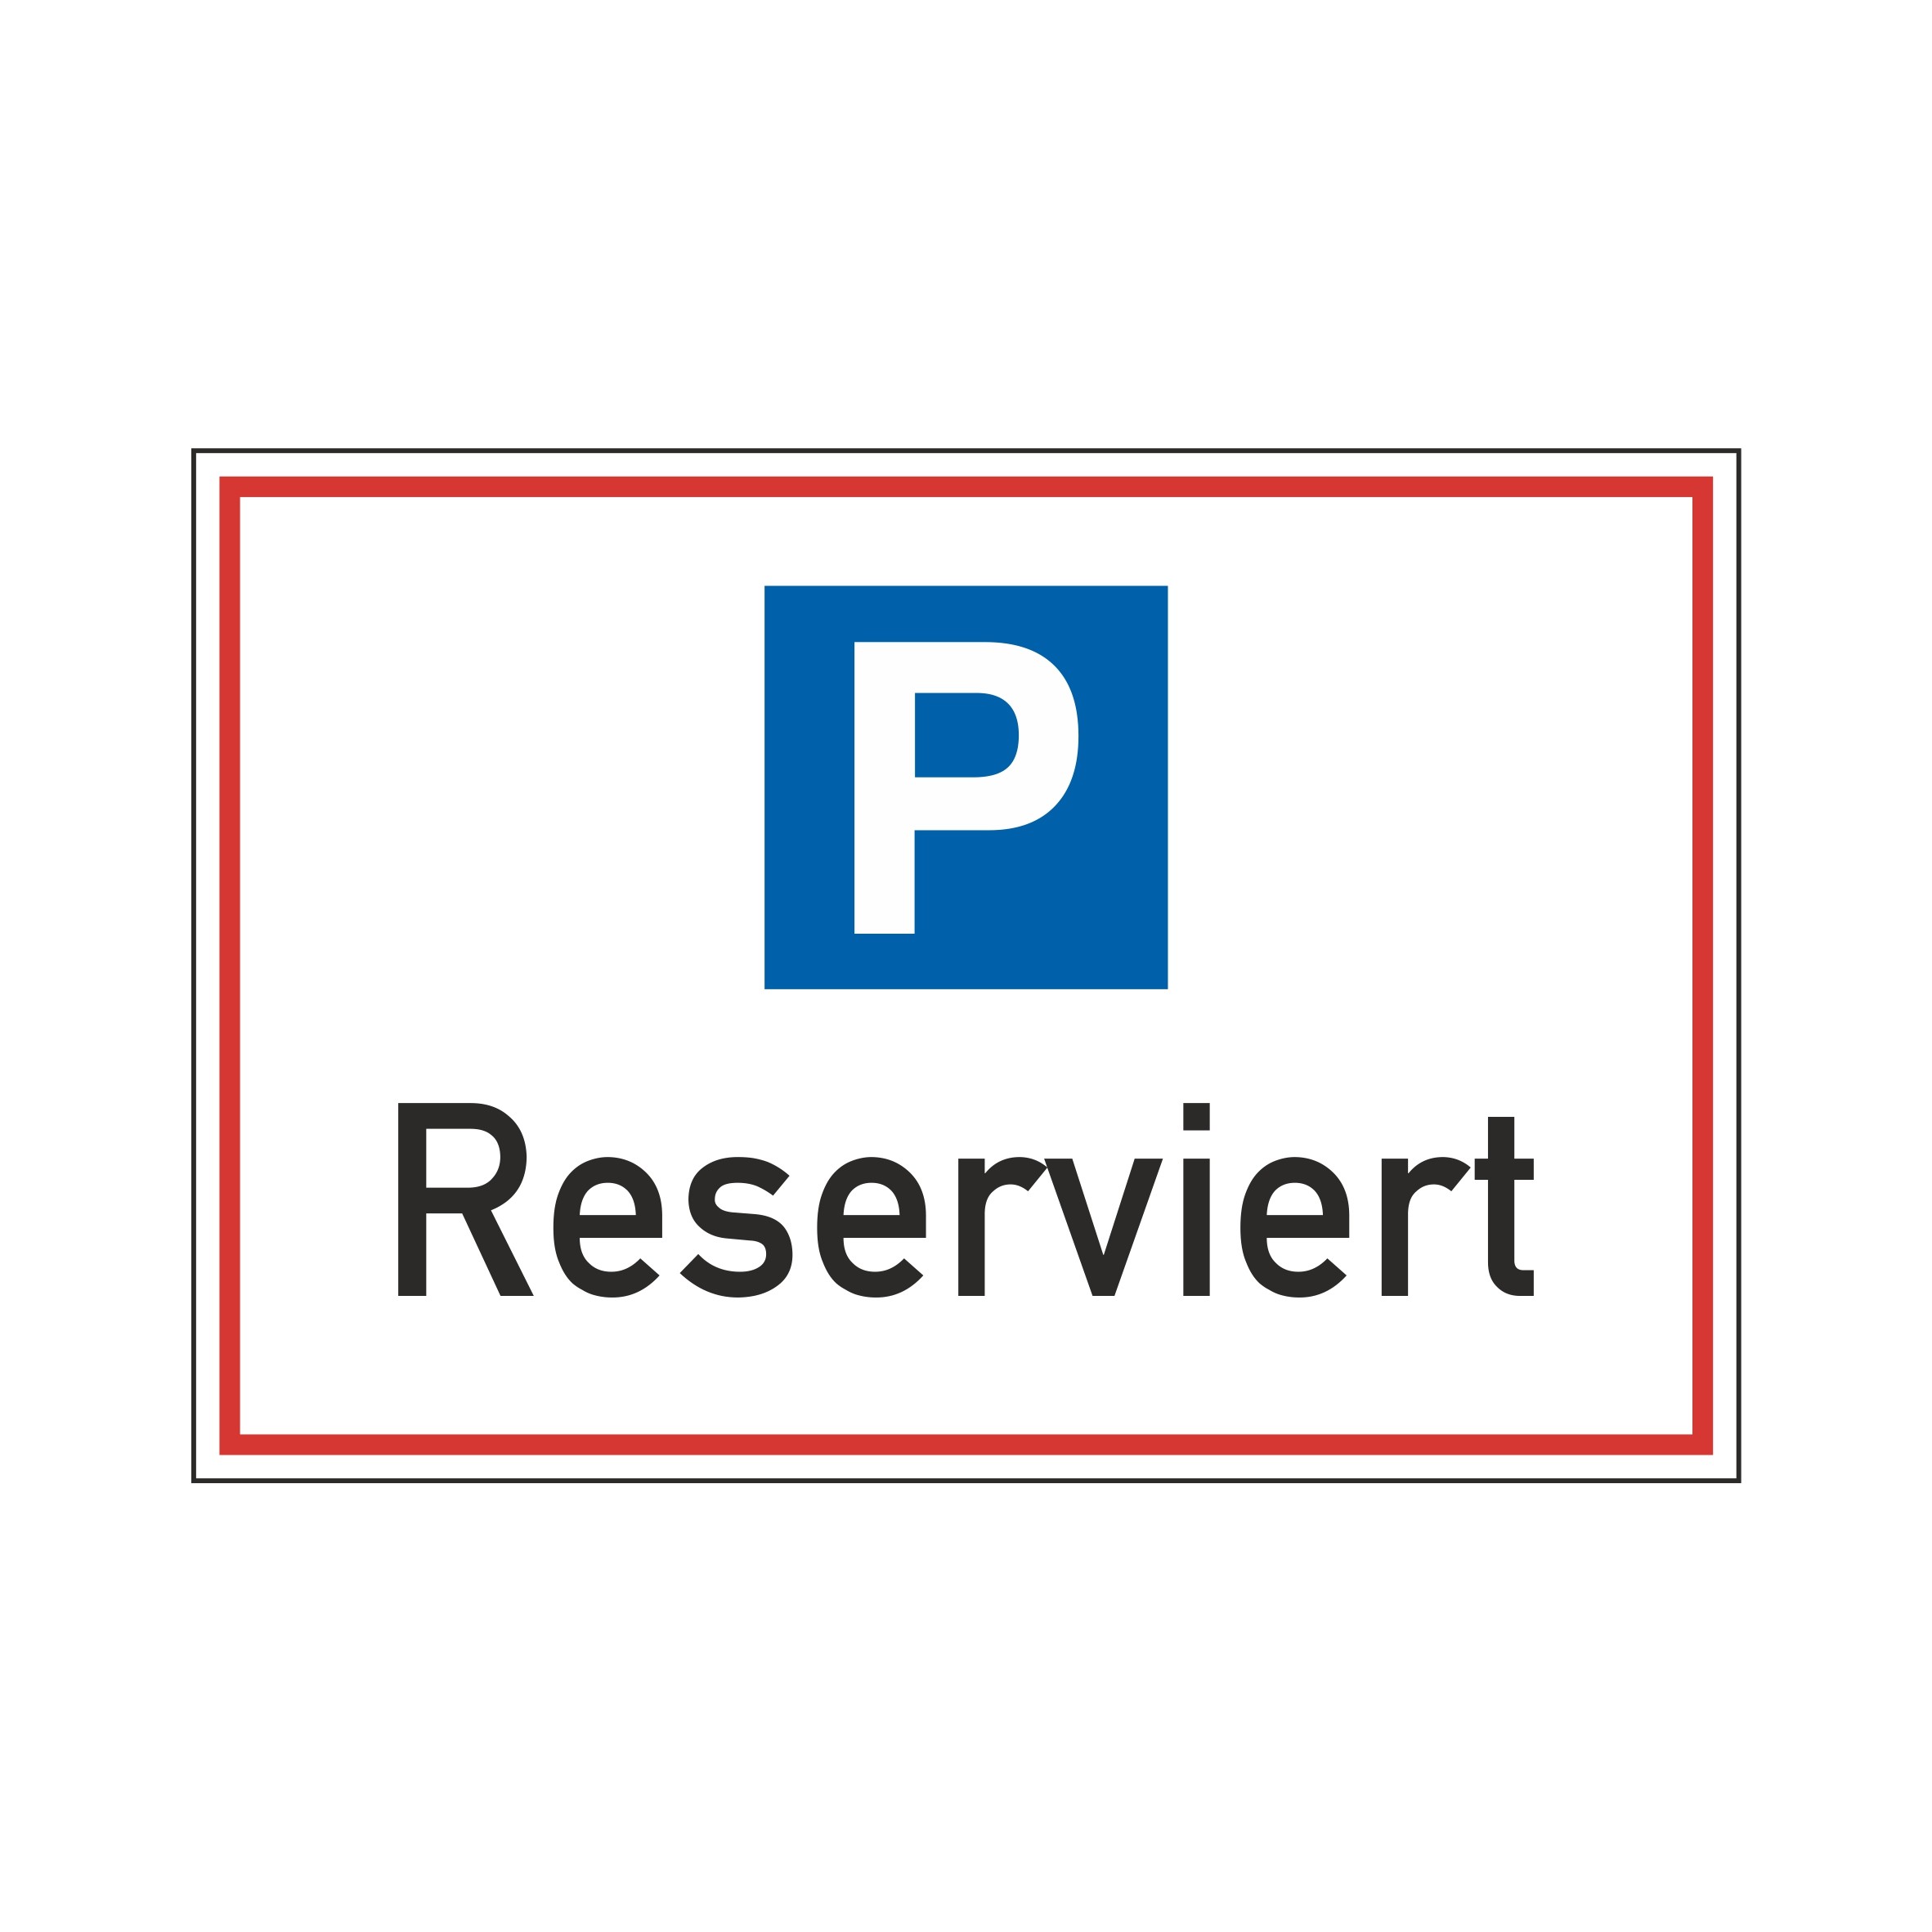 Parkplatzschild "Reserviert" 30x20cm